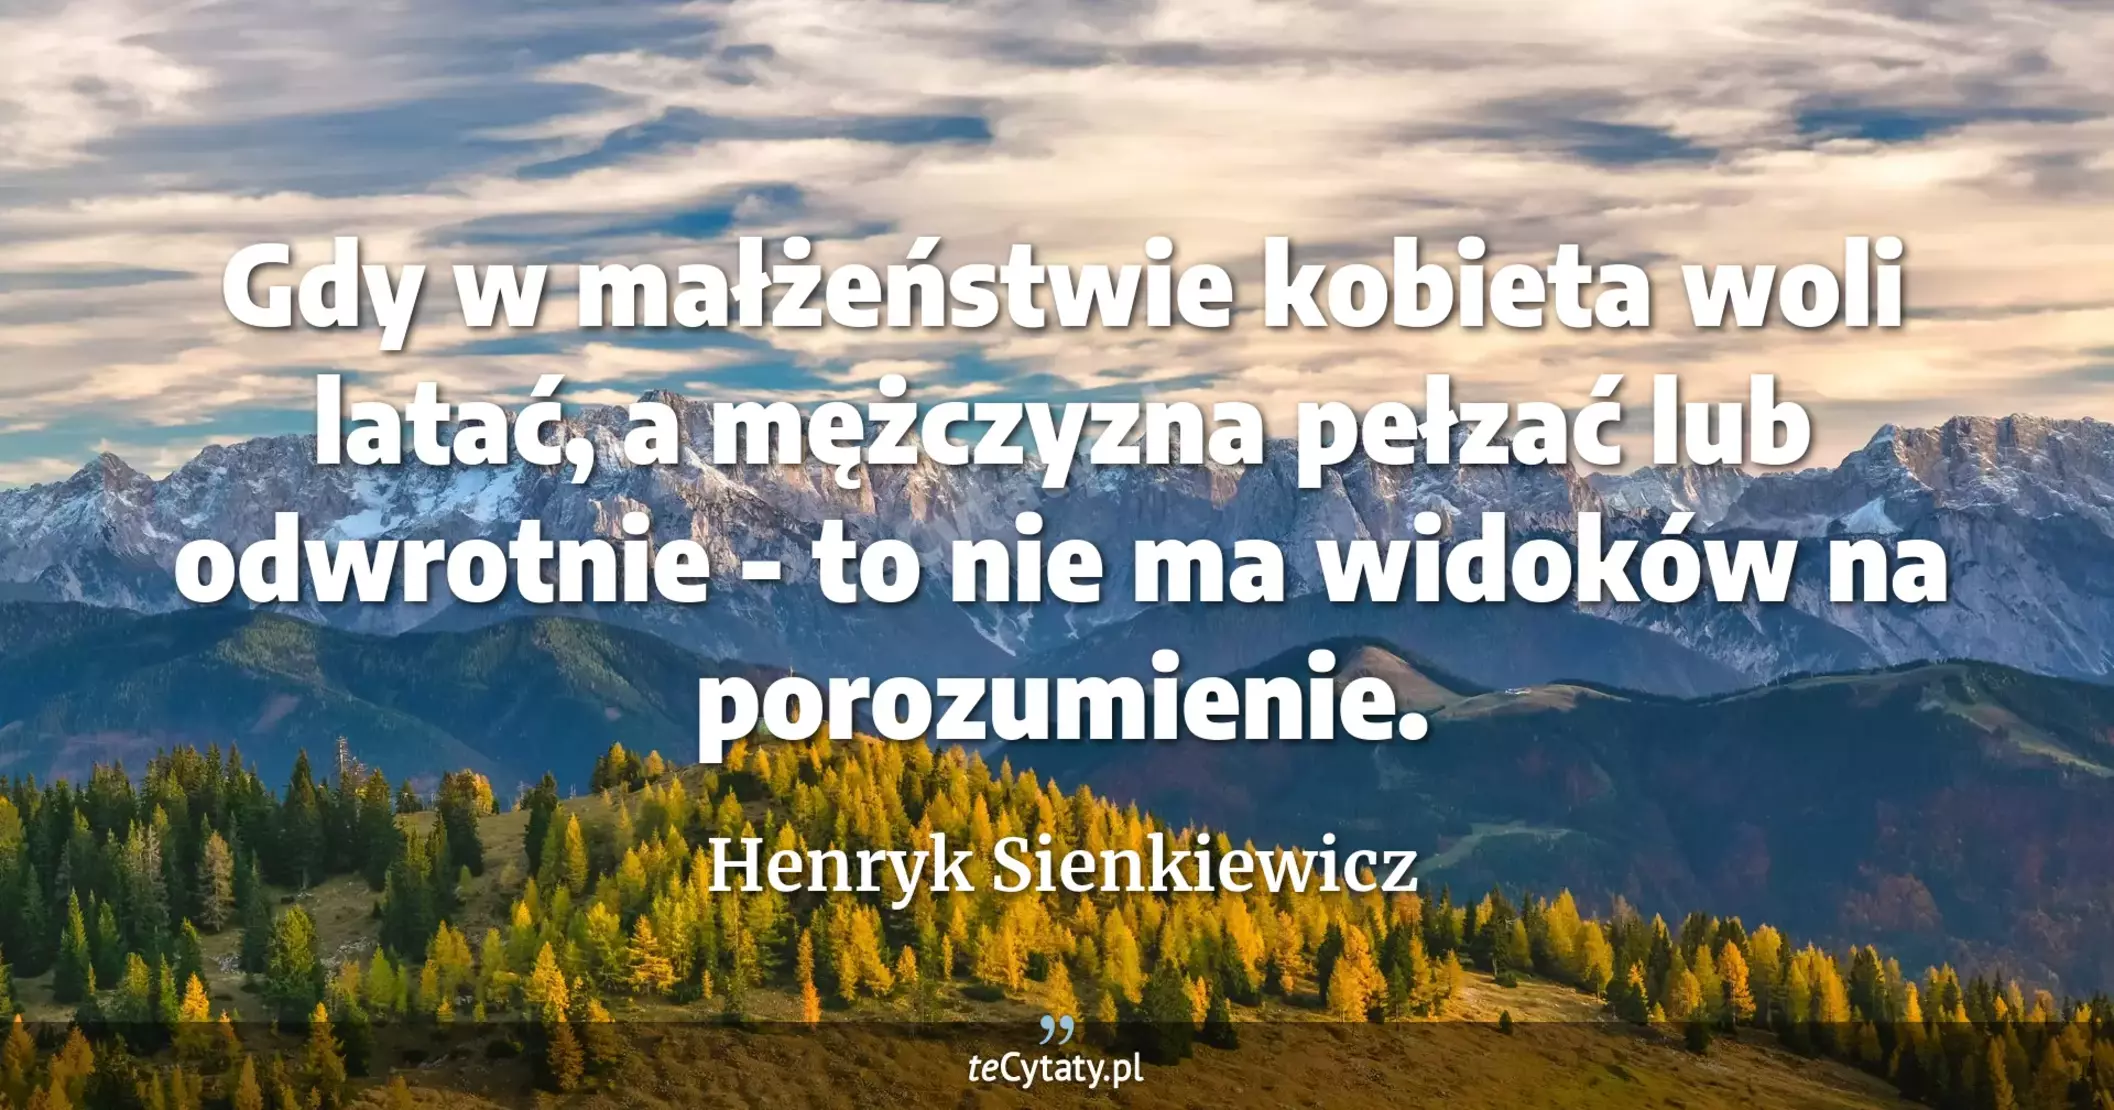 Gdy w małżeństwie kobieta woli latać, a mężczyzna pełzać lub odwrotnie - to nie ma widoków na porozumienie. - Henryk Sienkiewicz